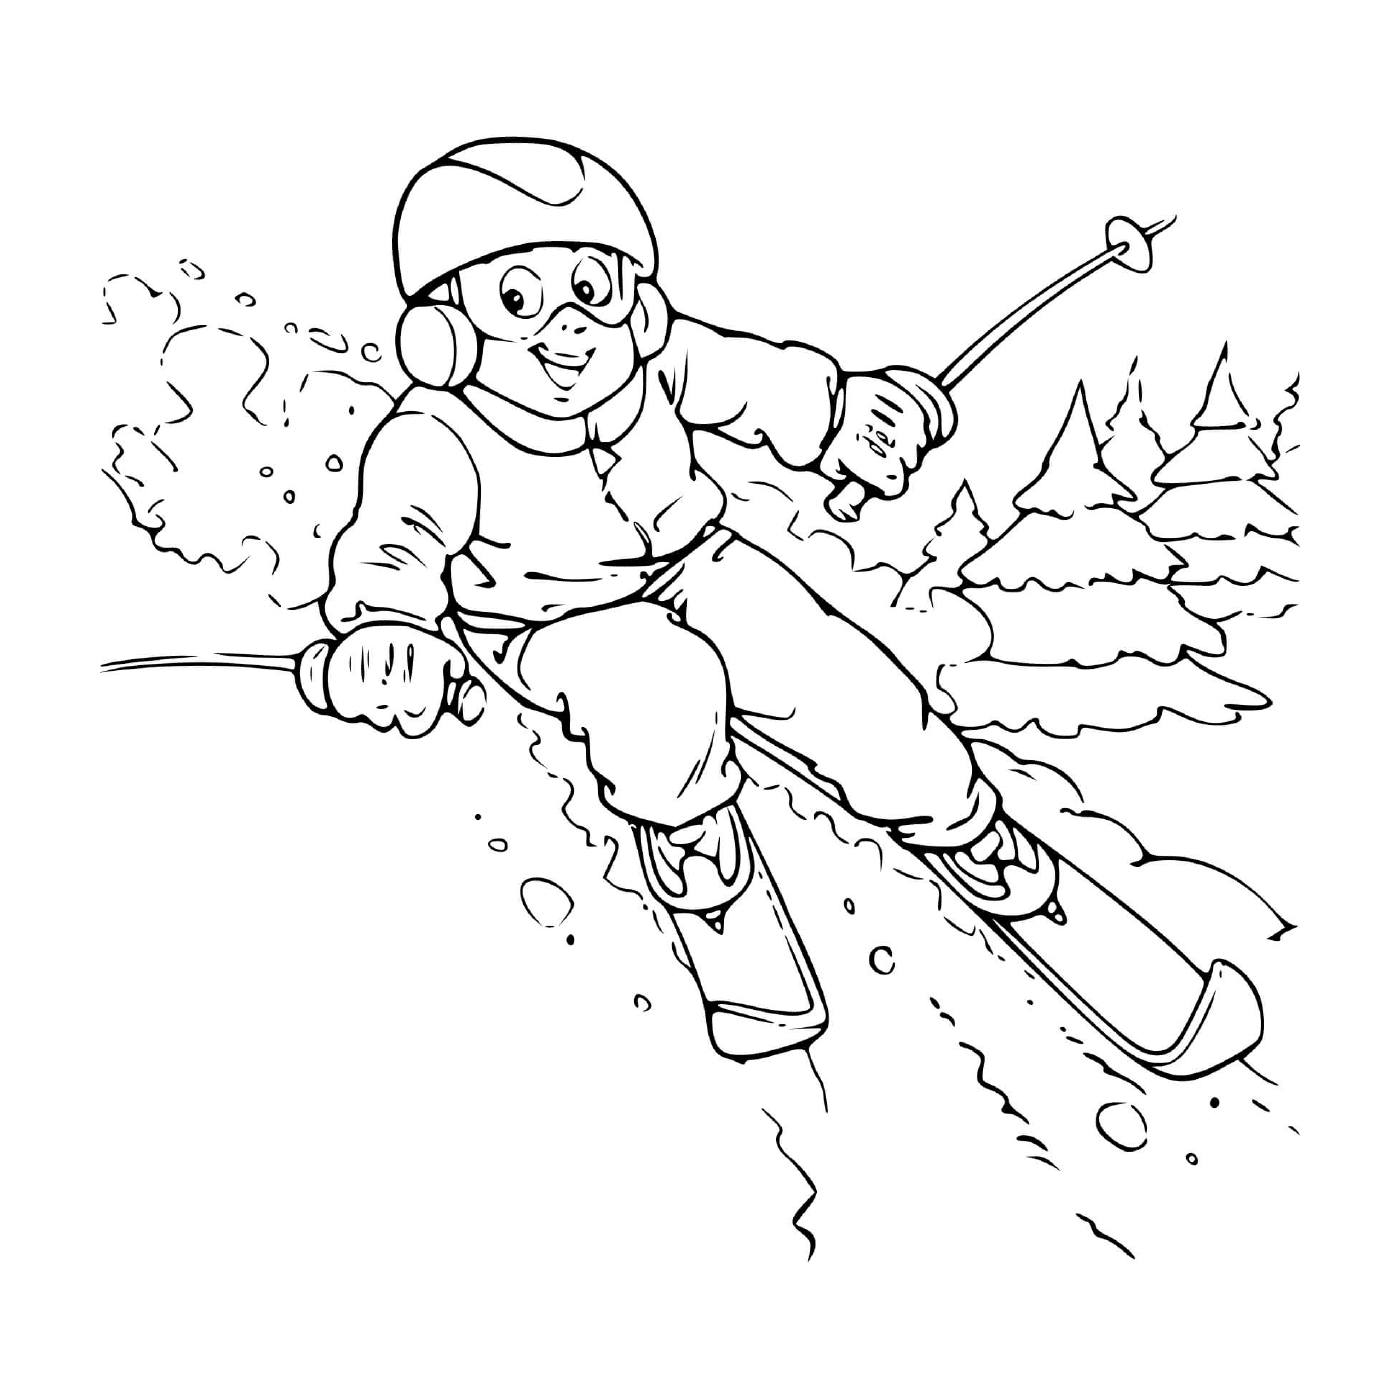  Child slide mountain skis 